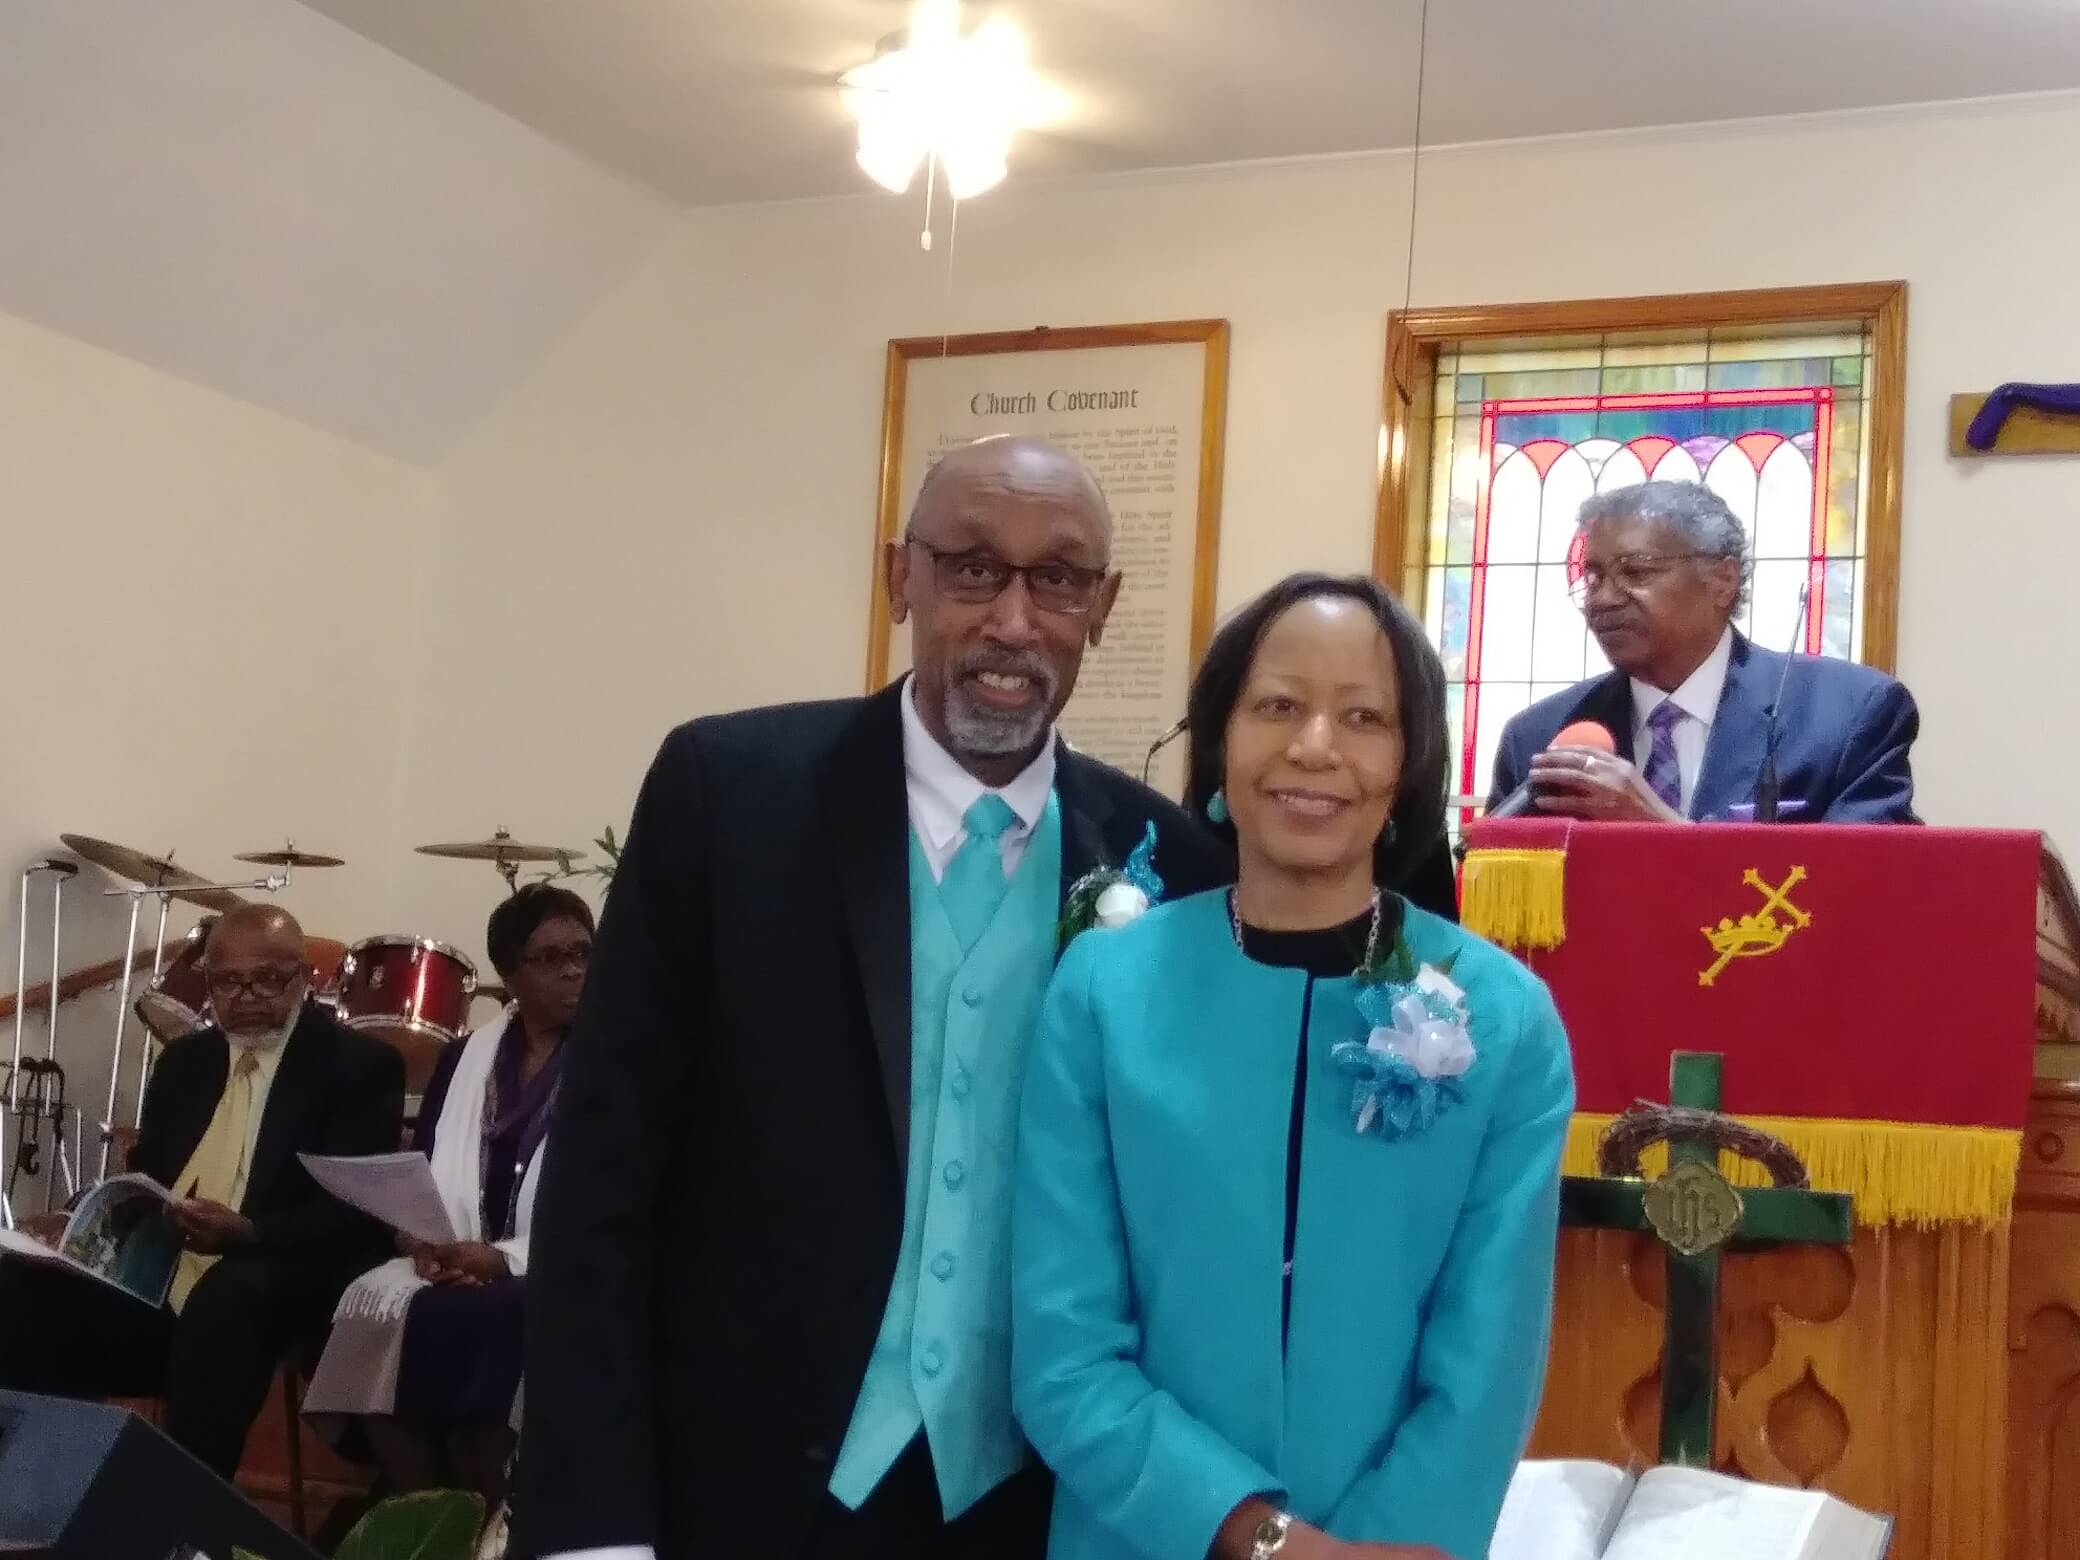 Pastor & Mrs. Simons during Pastor Anniversary Celebration